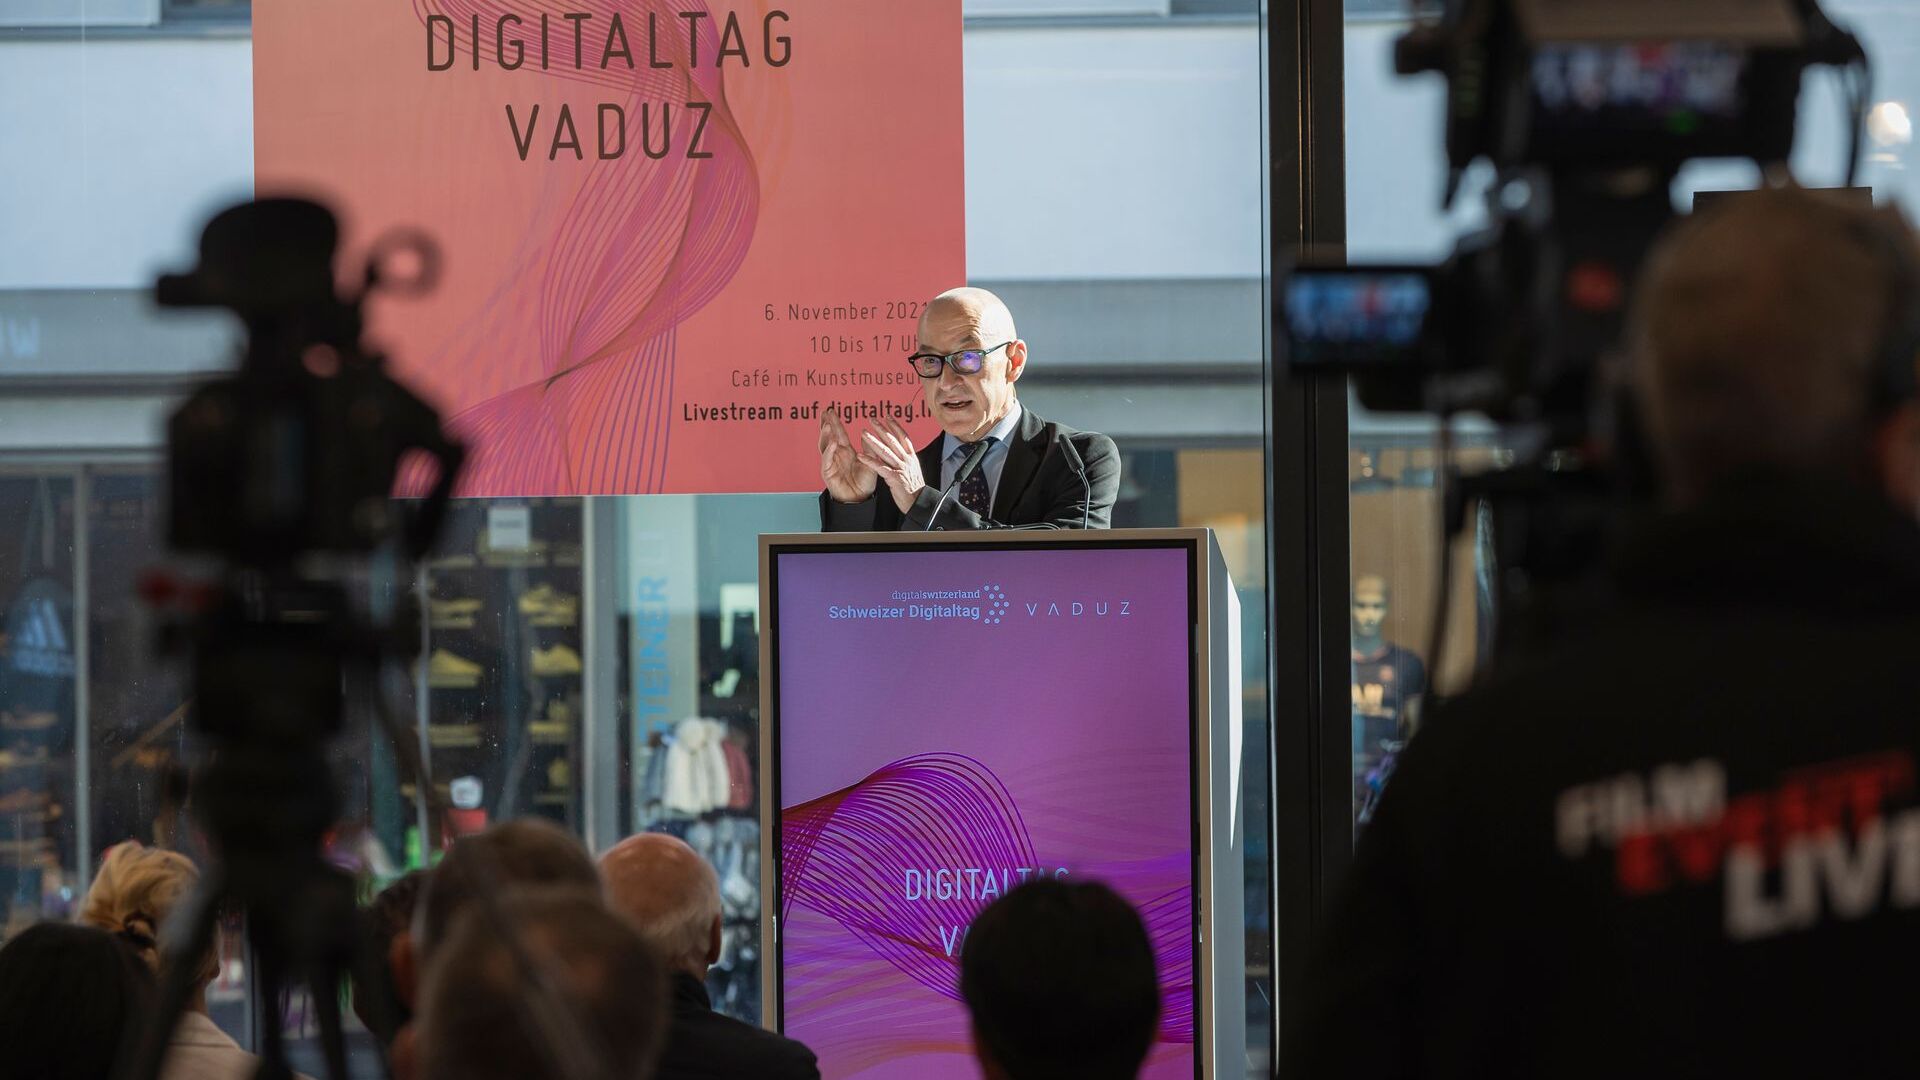 «Digitaltag Vaduz», приветствовавшийся Художественным музеем столицы Княжества Лихтенштейн в субботу, 6 ноября 2021 г., вызвал энтузиазм публики и выступающих по аналогии с «Швейцарским цифровым днем» следующего дня 10: вмешательство футуролог и знаток немецких тенденций Давид Босхарт